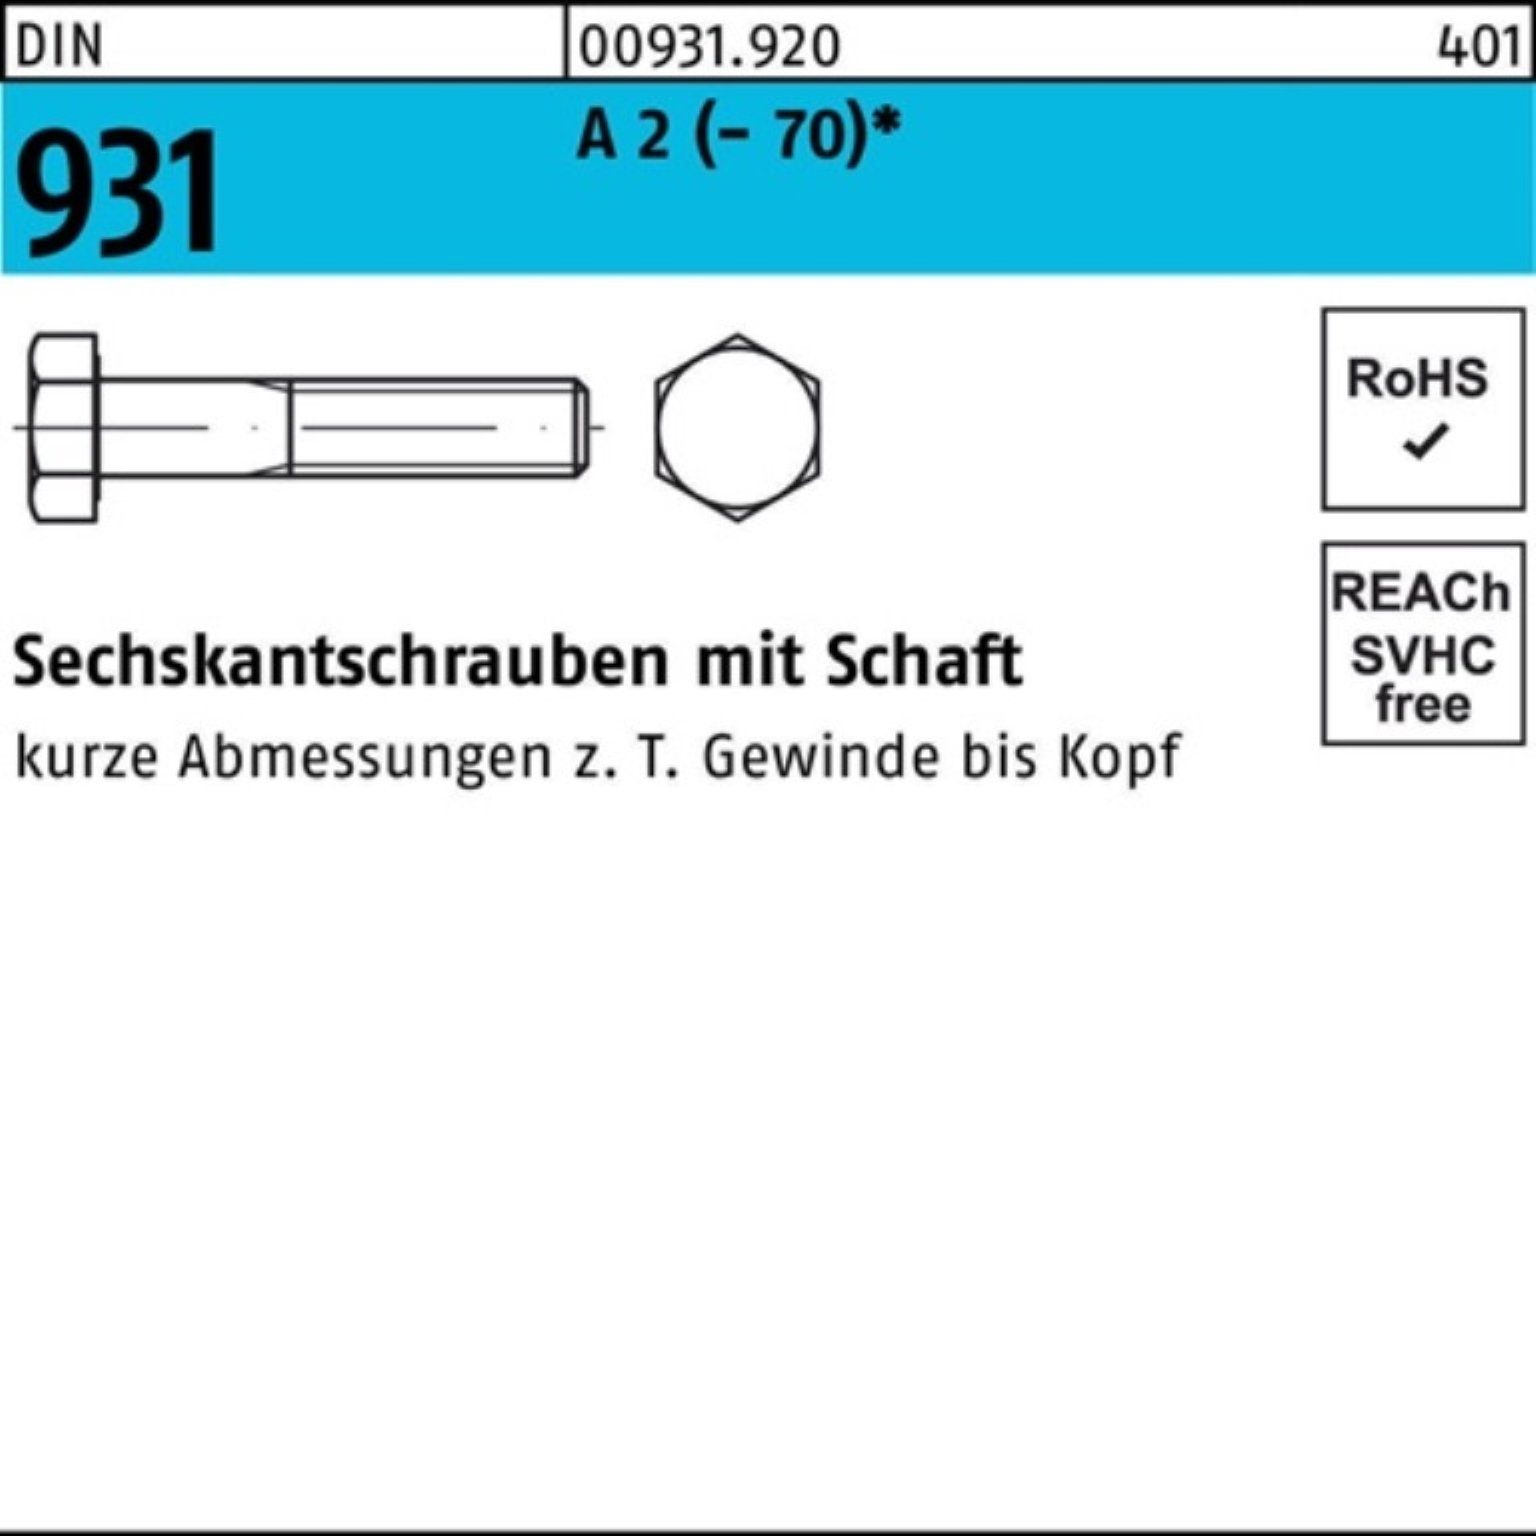 Reyher Sechskantschraube 931 (70) 100er M8x 200 Stü Schaft Sechskantschraube A DIN Pack 25 2